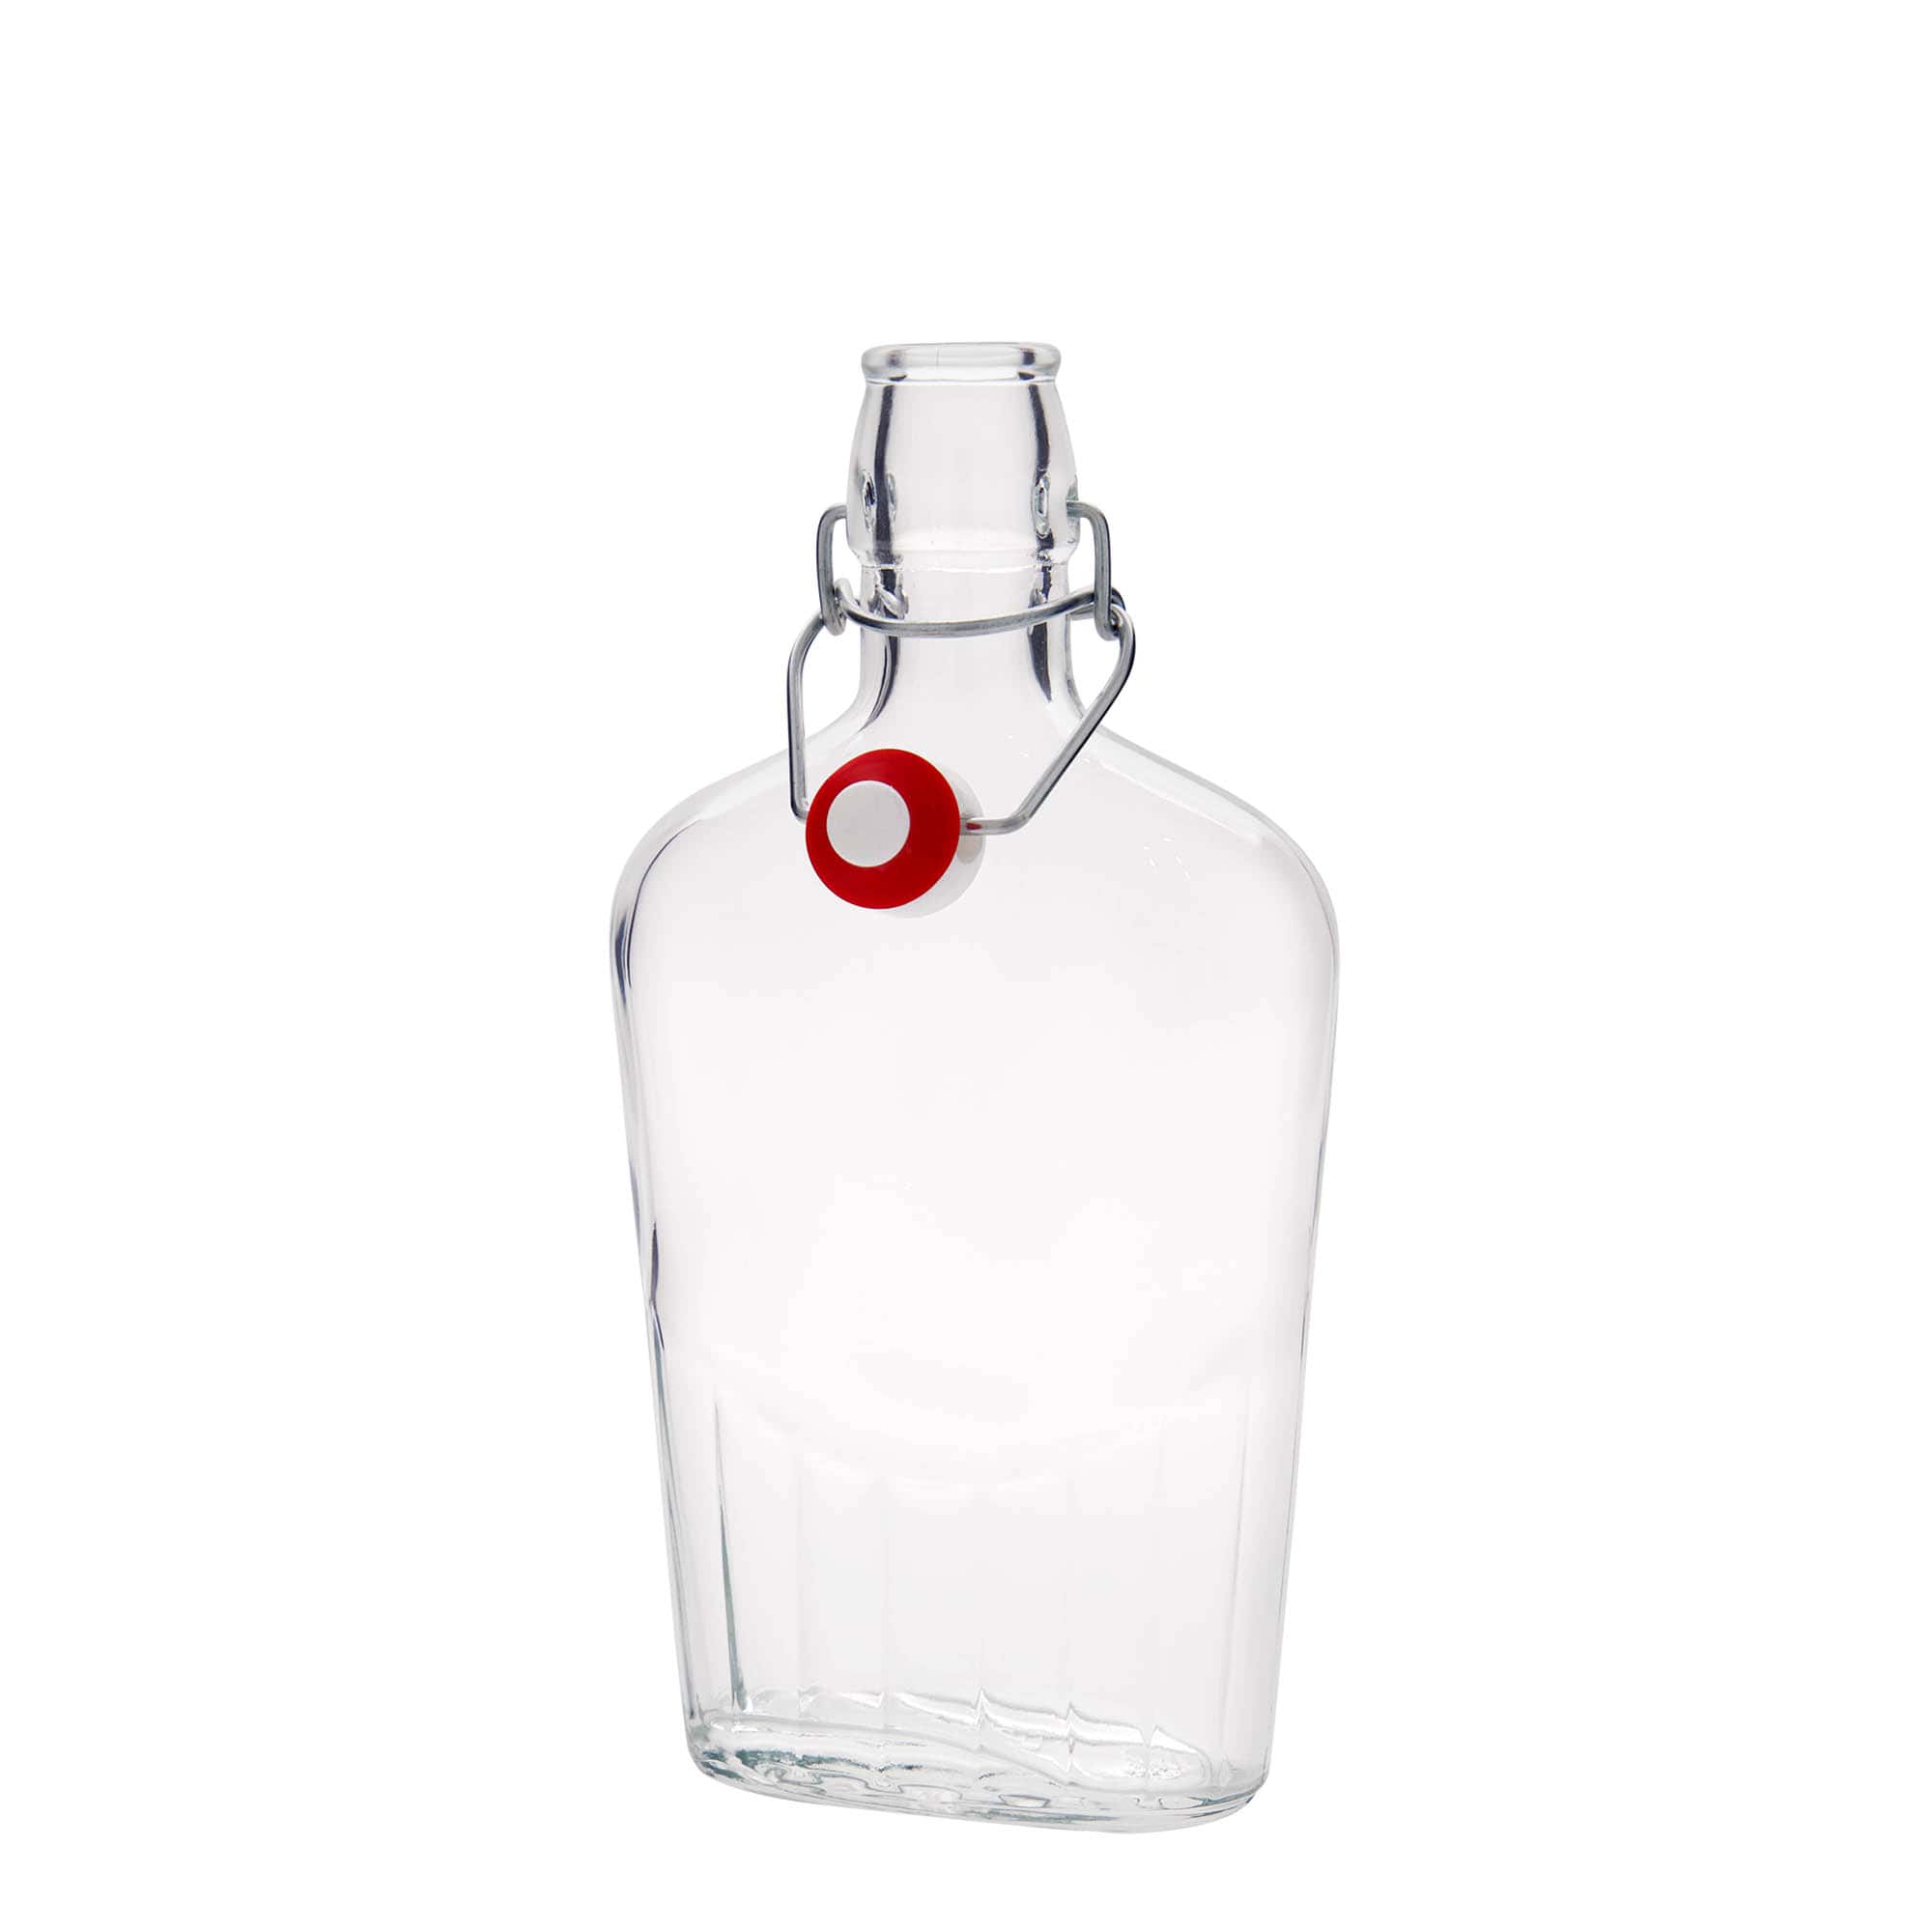 Botella de vidrio 'Fiaschetta' de 500 ml, ovalada, boca: tapón mecánico